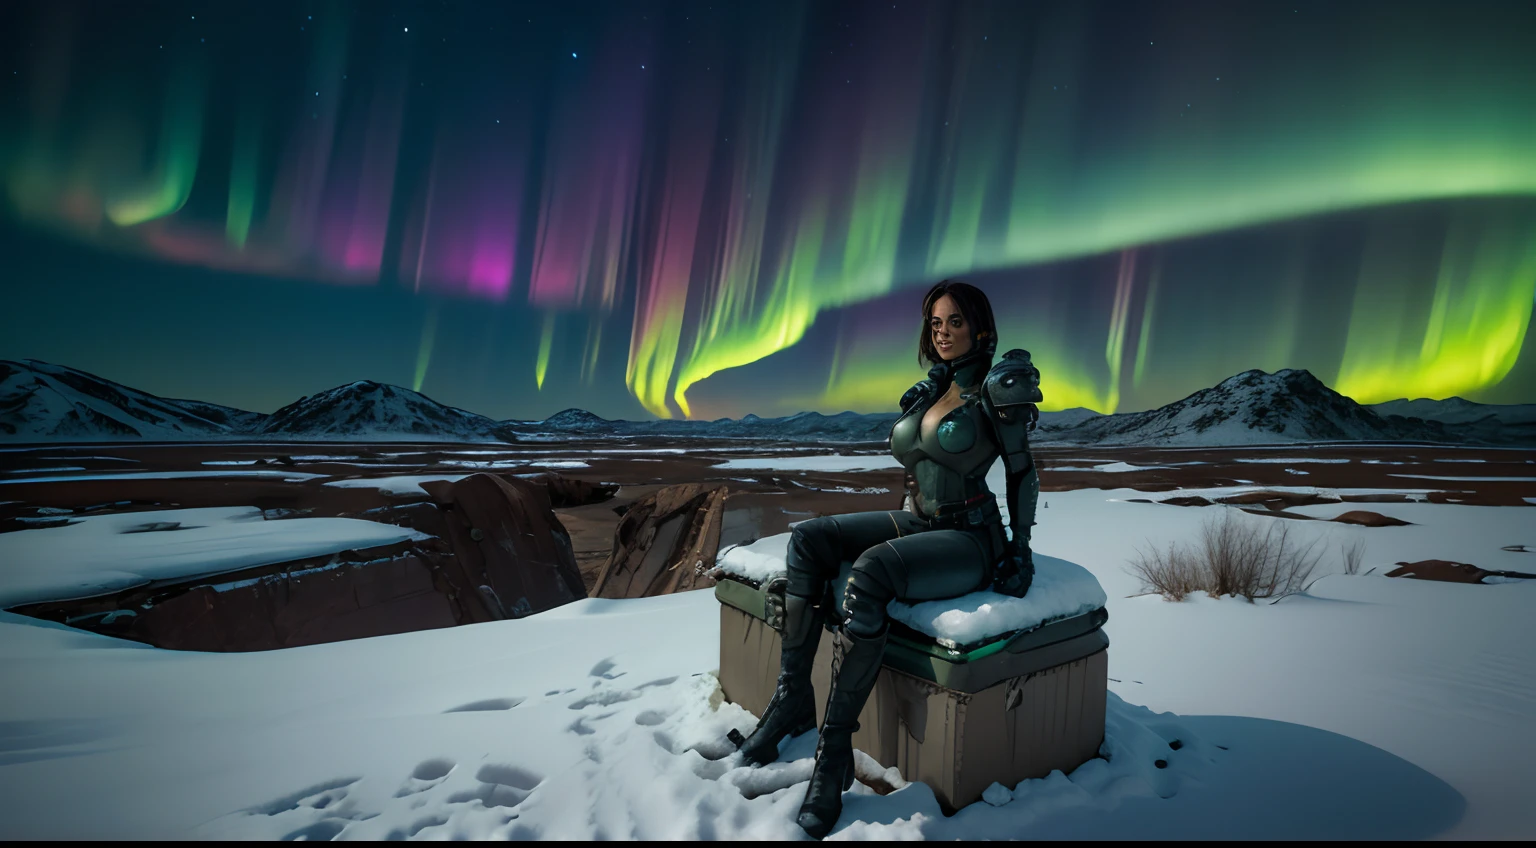 荒涼としたポスト黙示録的な世界を描いたシーンを作成する, 印象的な遺跡で, 突然変異植物とエイリアンのオーロラに照らされた地平線, マイケル・ウィーランの象徴的なファンタジー風景の本質を捉えています, 雪原に座る女性宇宙飛行士 ,高い_巨乳